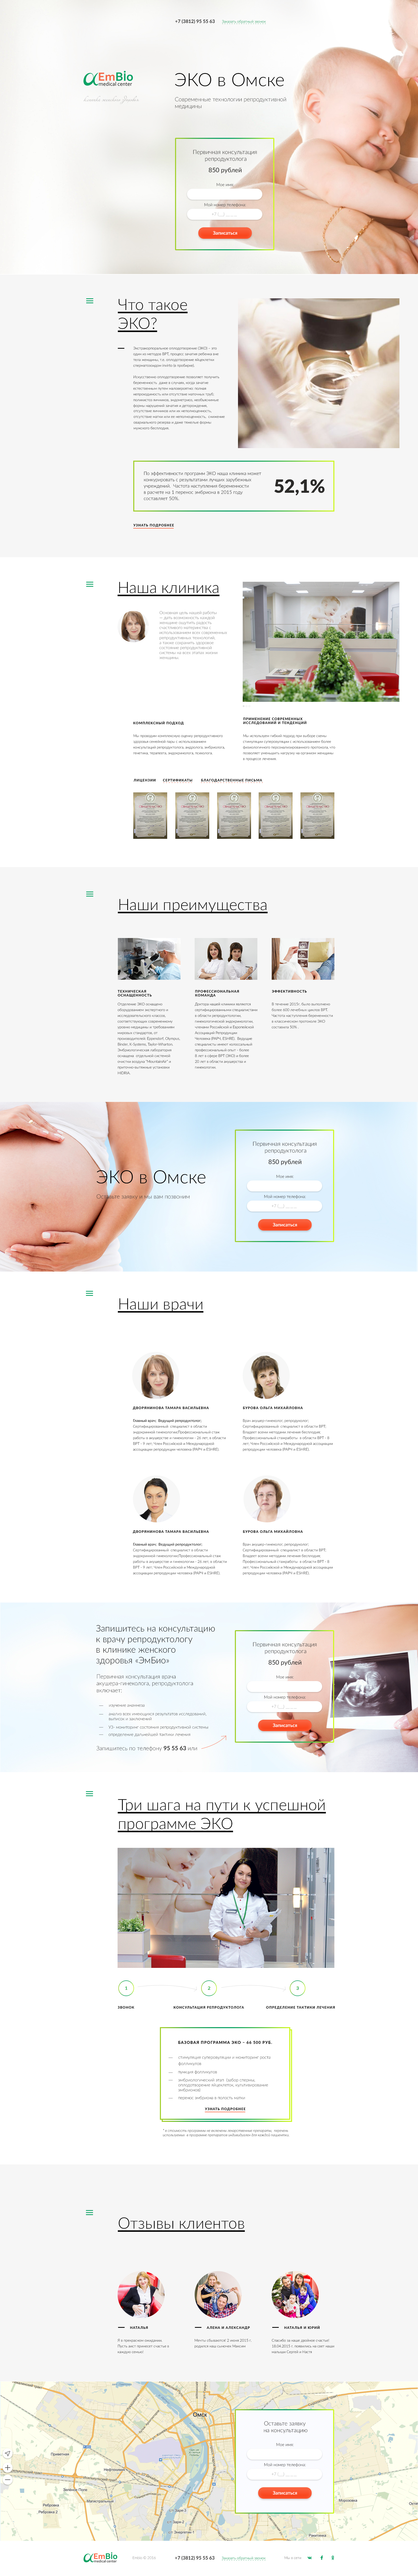 Создание Landing page для клиники женского здоровья "Эмбио".